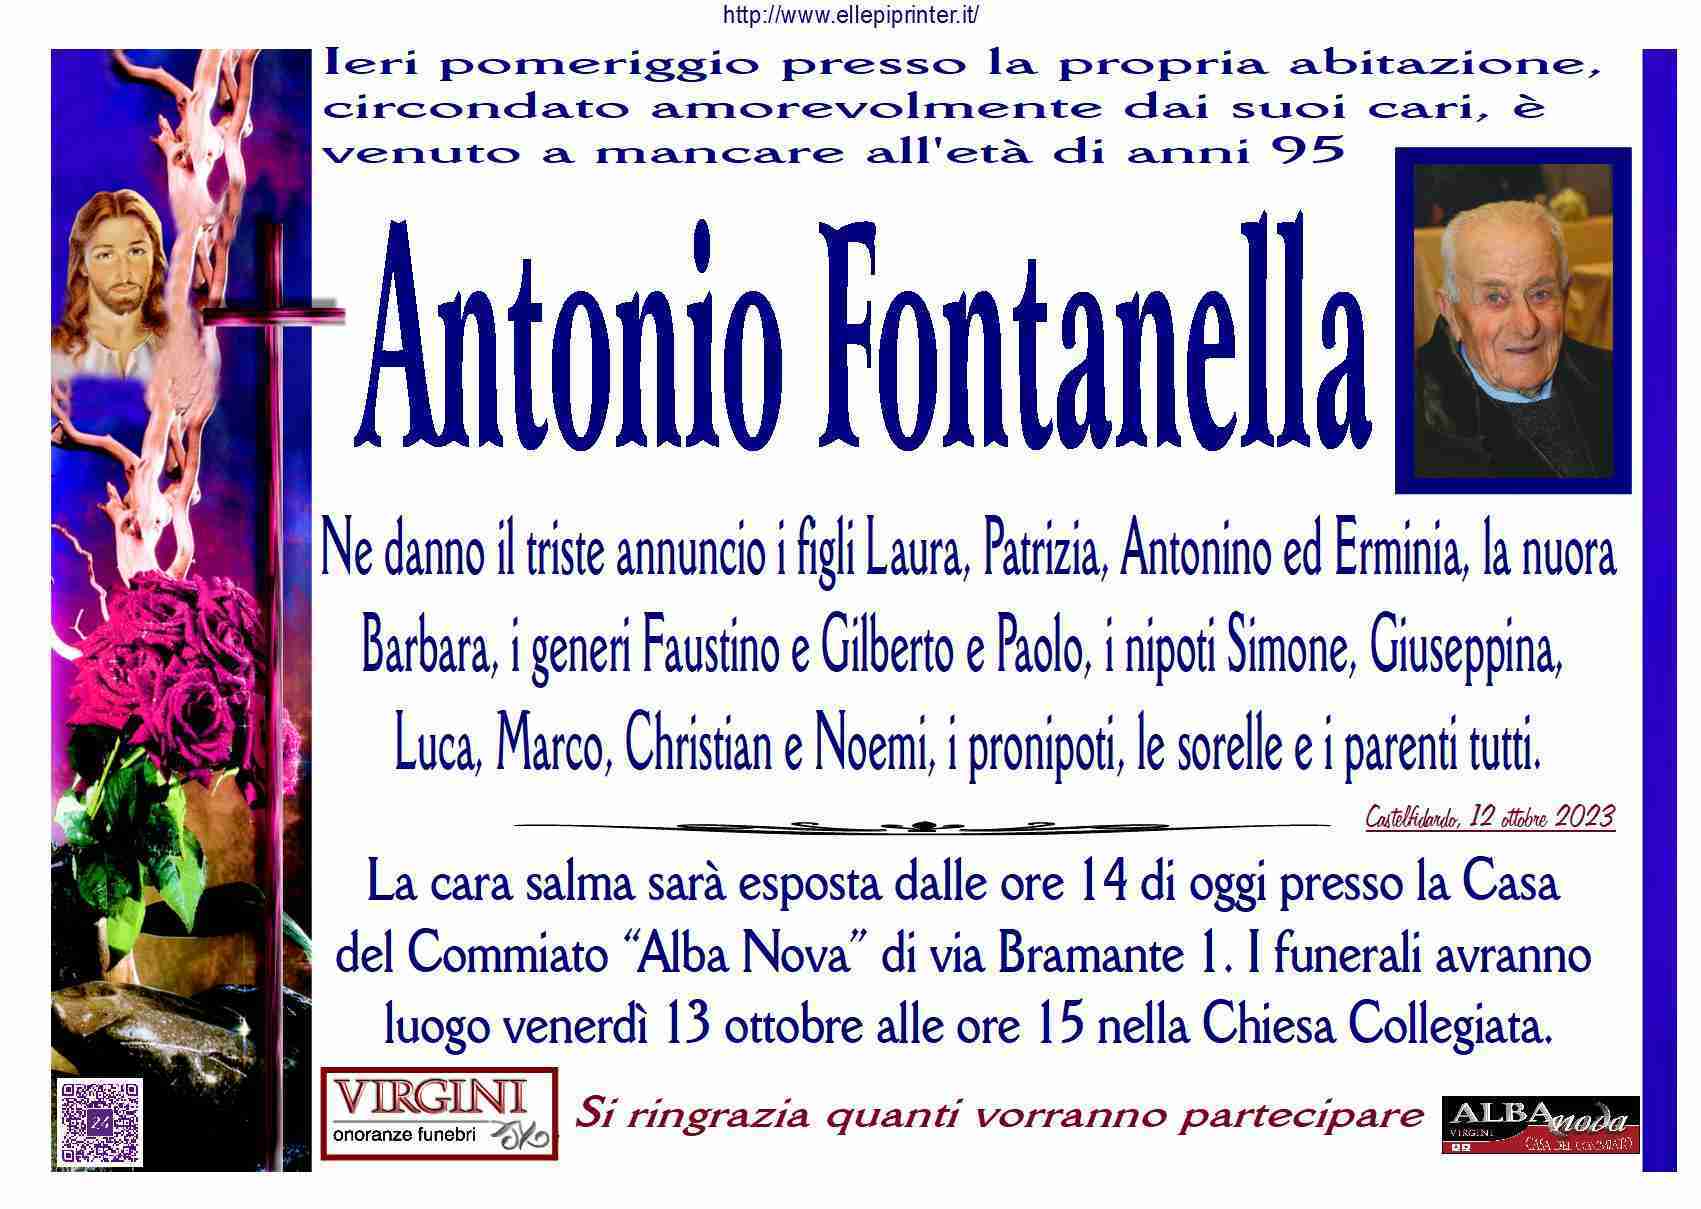 Antonio Fontanella